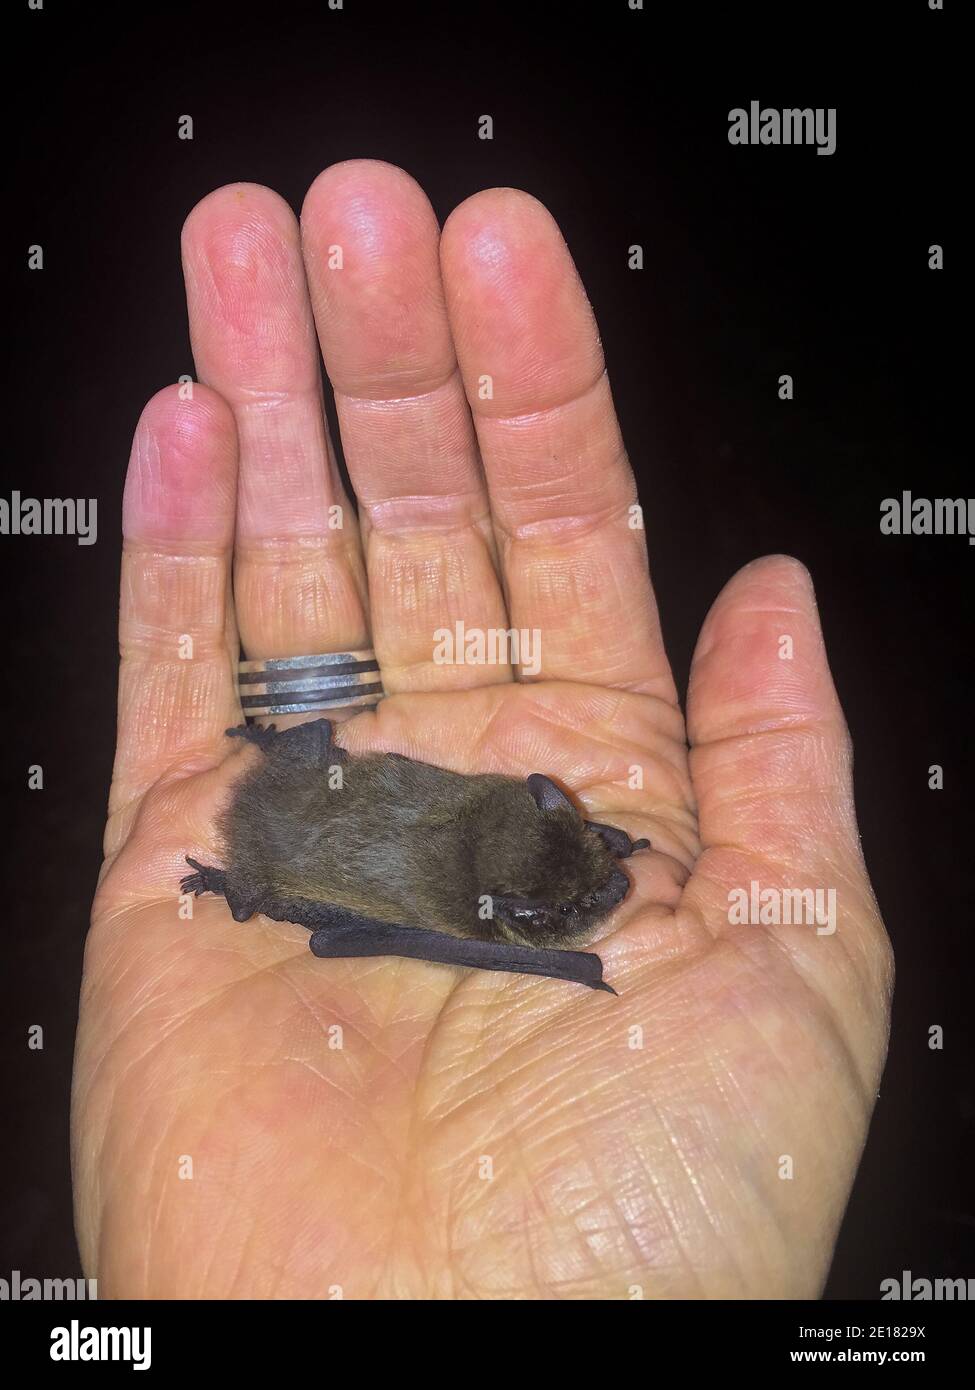 La commune de Pipistrelle Bat (Pipistrellus pipistrellus) entre les mains du biologiste, Baden-Wuerttemberg, Allemagne Banque D'Images